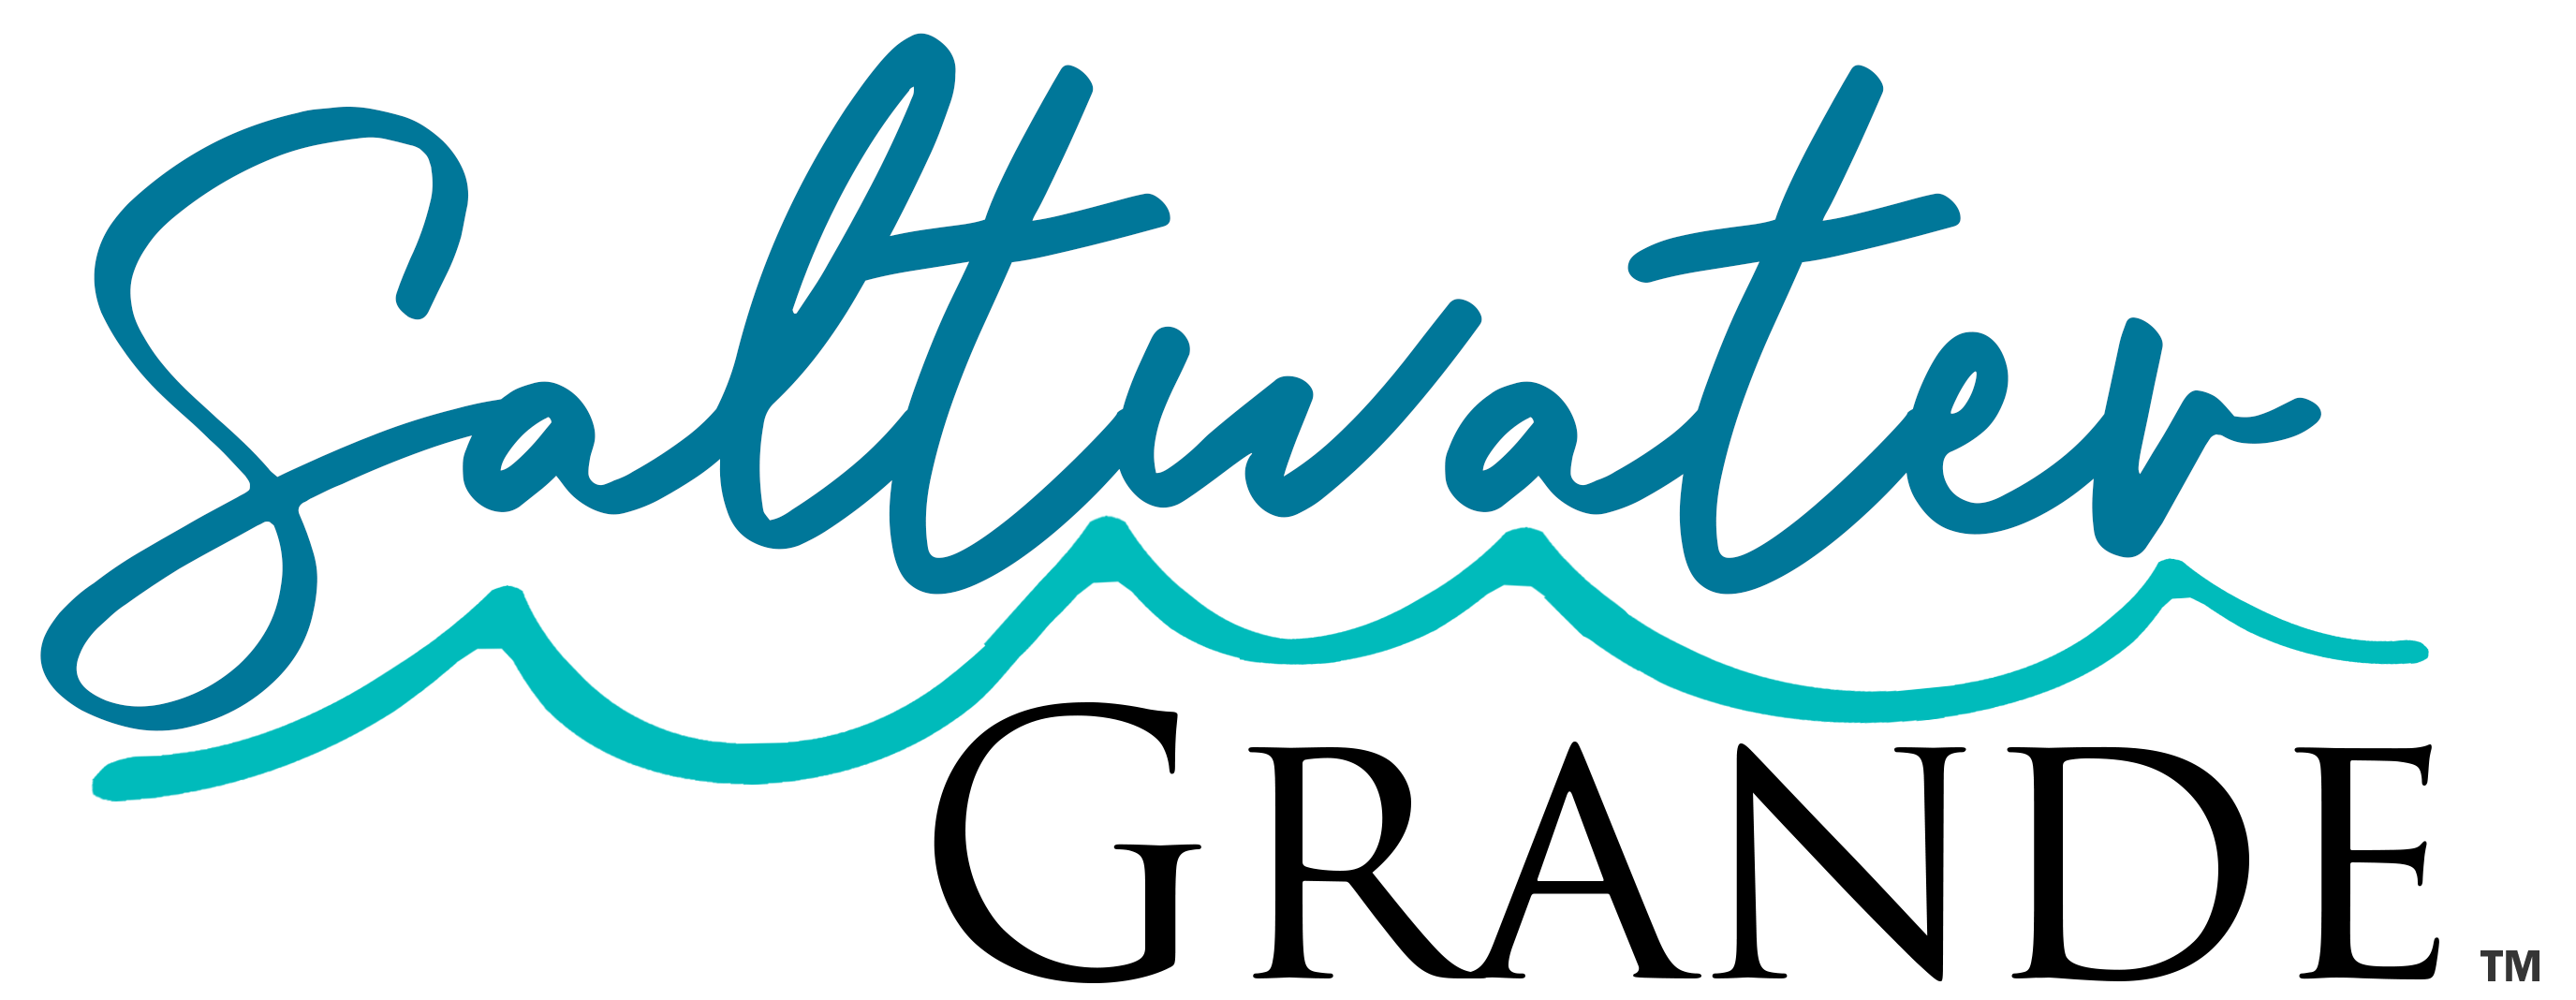 Saltwater Grande Logo